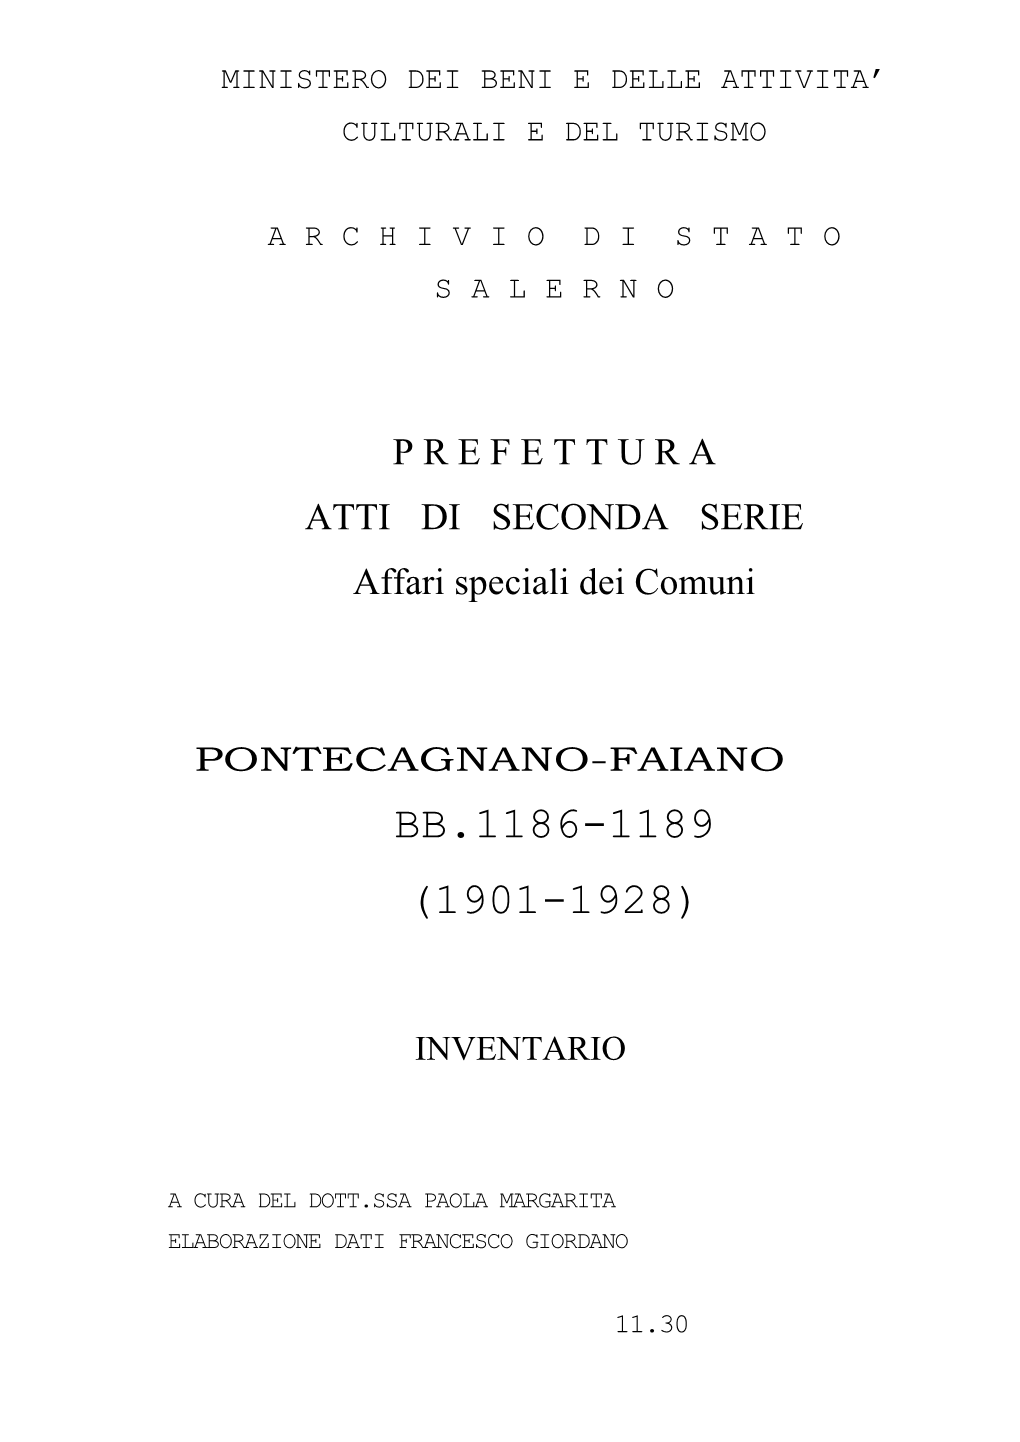 Pontecagnano-Faiano Bb.1186-1189 (1901-1928)